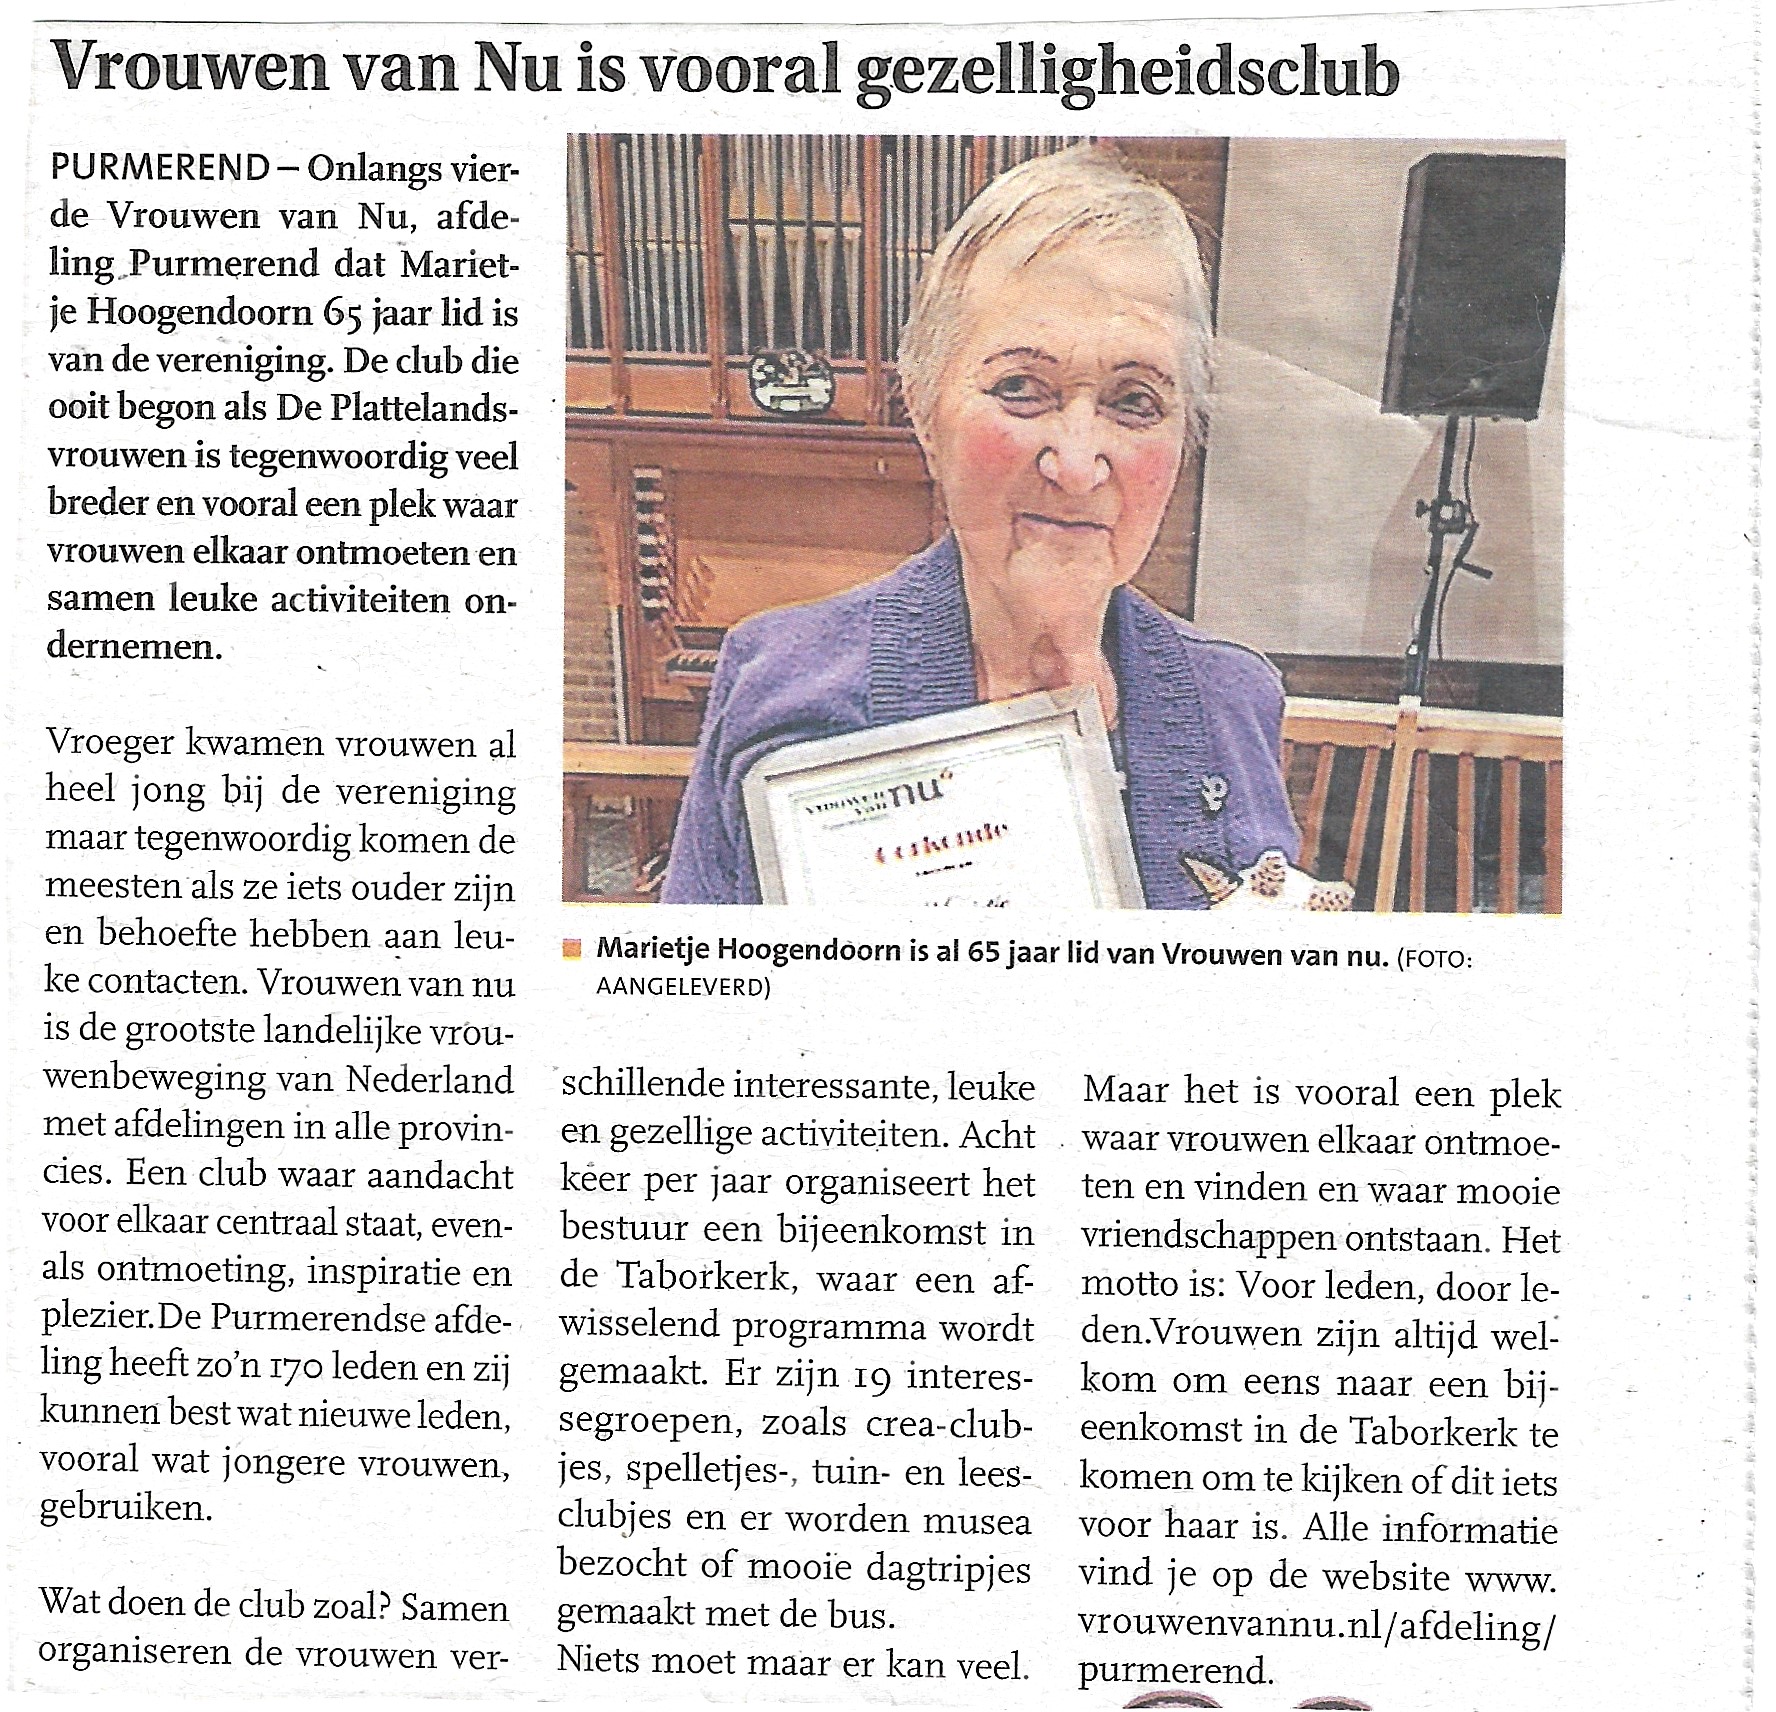 Marietje Hoogendoorn 65 jaar lid van Vrouwen van Nu Purmerend